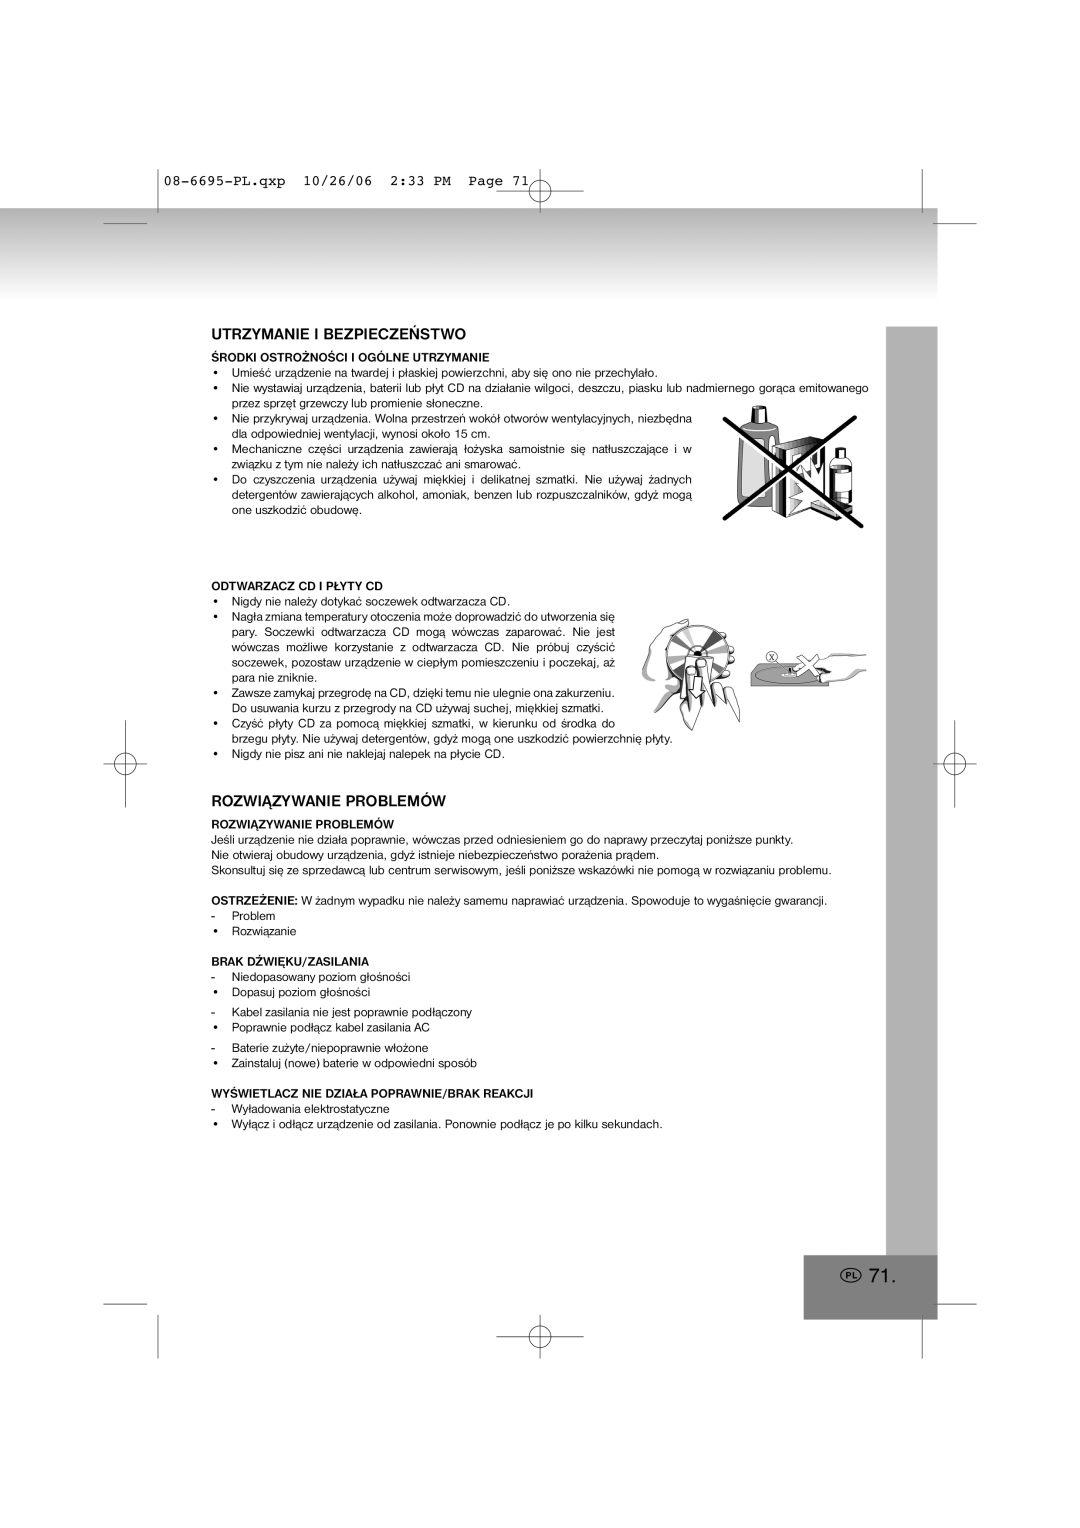 Elta manual Utrzymanie I Bezpieczeństwo, Rozwiązywanie Problemów, 08-6695-PL.qxp10/26/06 2 33 PM Page 